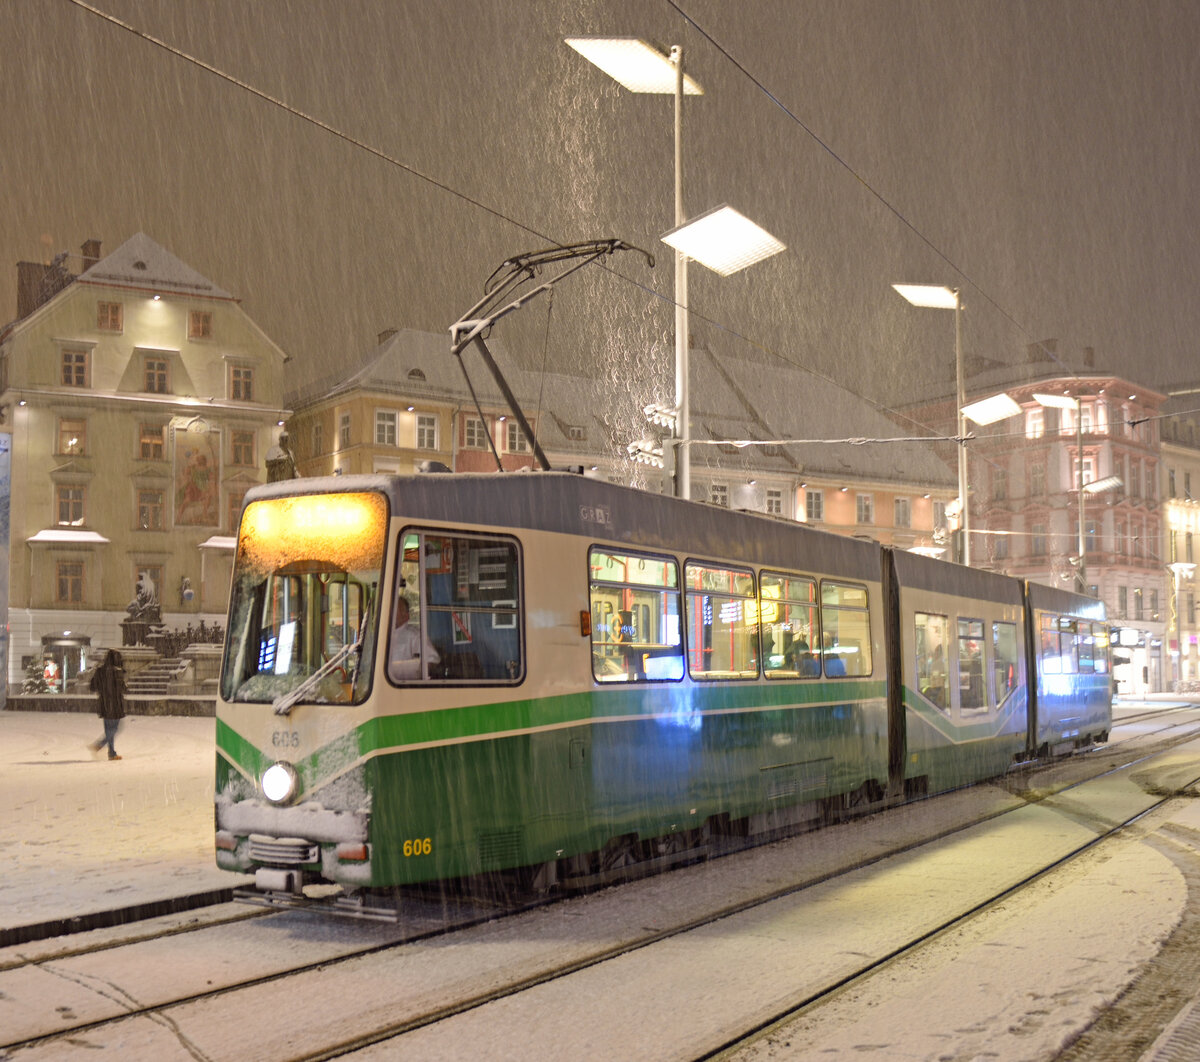 Darf's bei den derzeit heißen Temperaturen etwas Abkühlung sein?
HGL TW 606 auf der  Linie 6 am 27.Dezember 2020 am Grazer Hauptplatz.